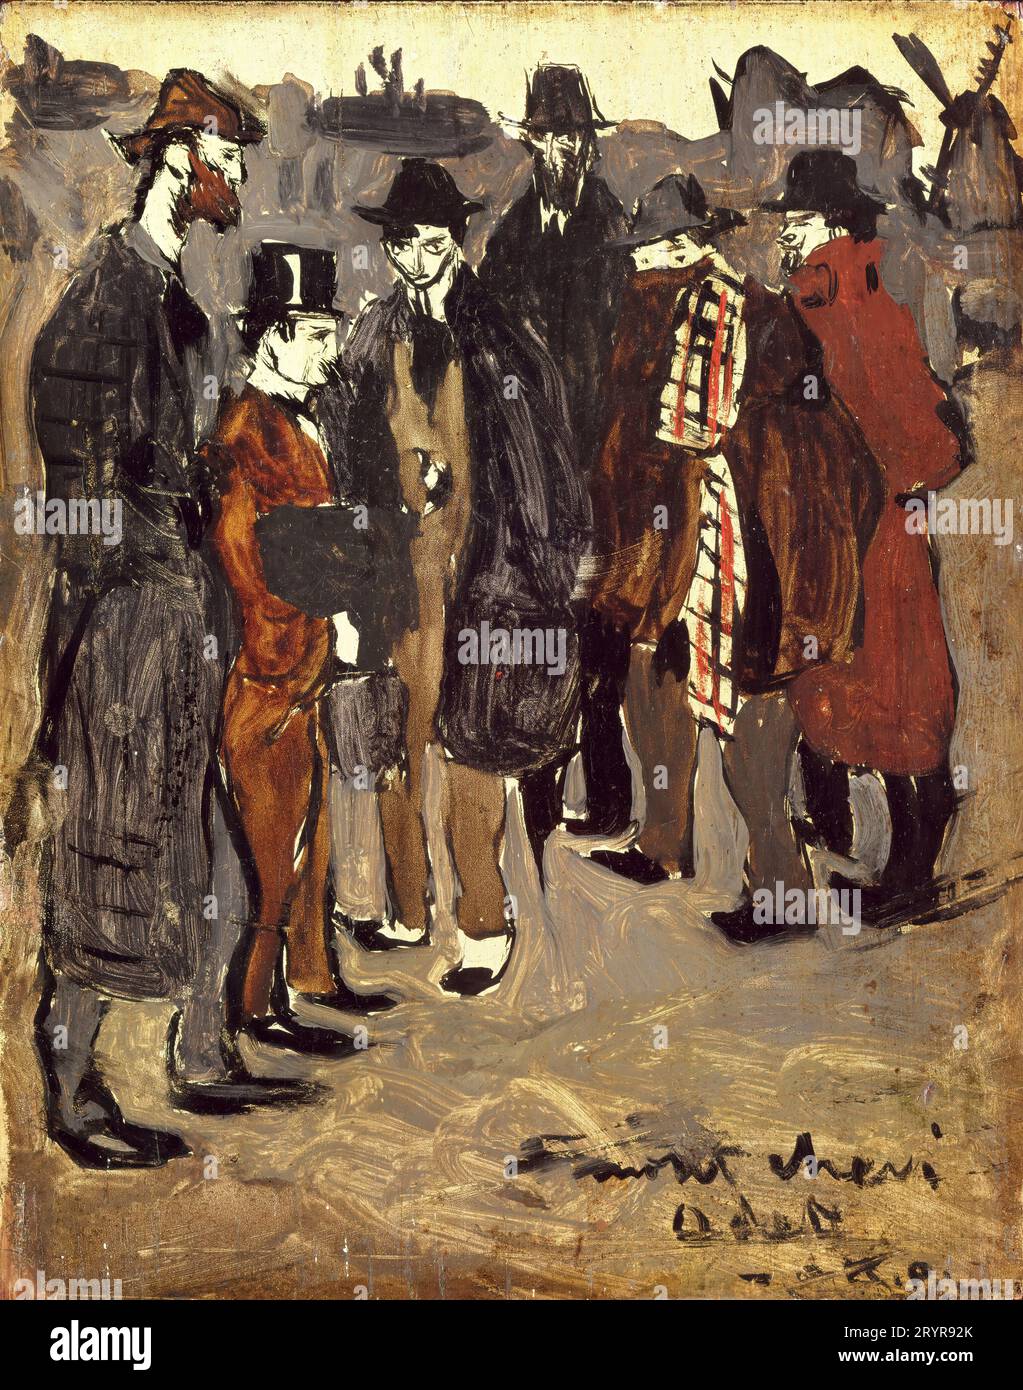 Pablo Picasso/ Groupe des Catalans à Montmartre : Pichot, Mañach, Casagemas, Brossa, Picasso, et Gener, 1900. Huile sur panneau. (24,1 x 18,7 cm). PABLO RUIZ PICASSO. Banque D'Images